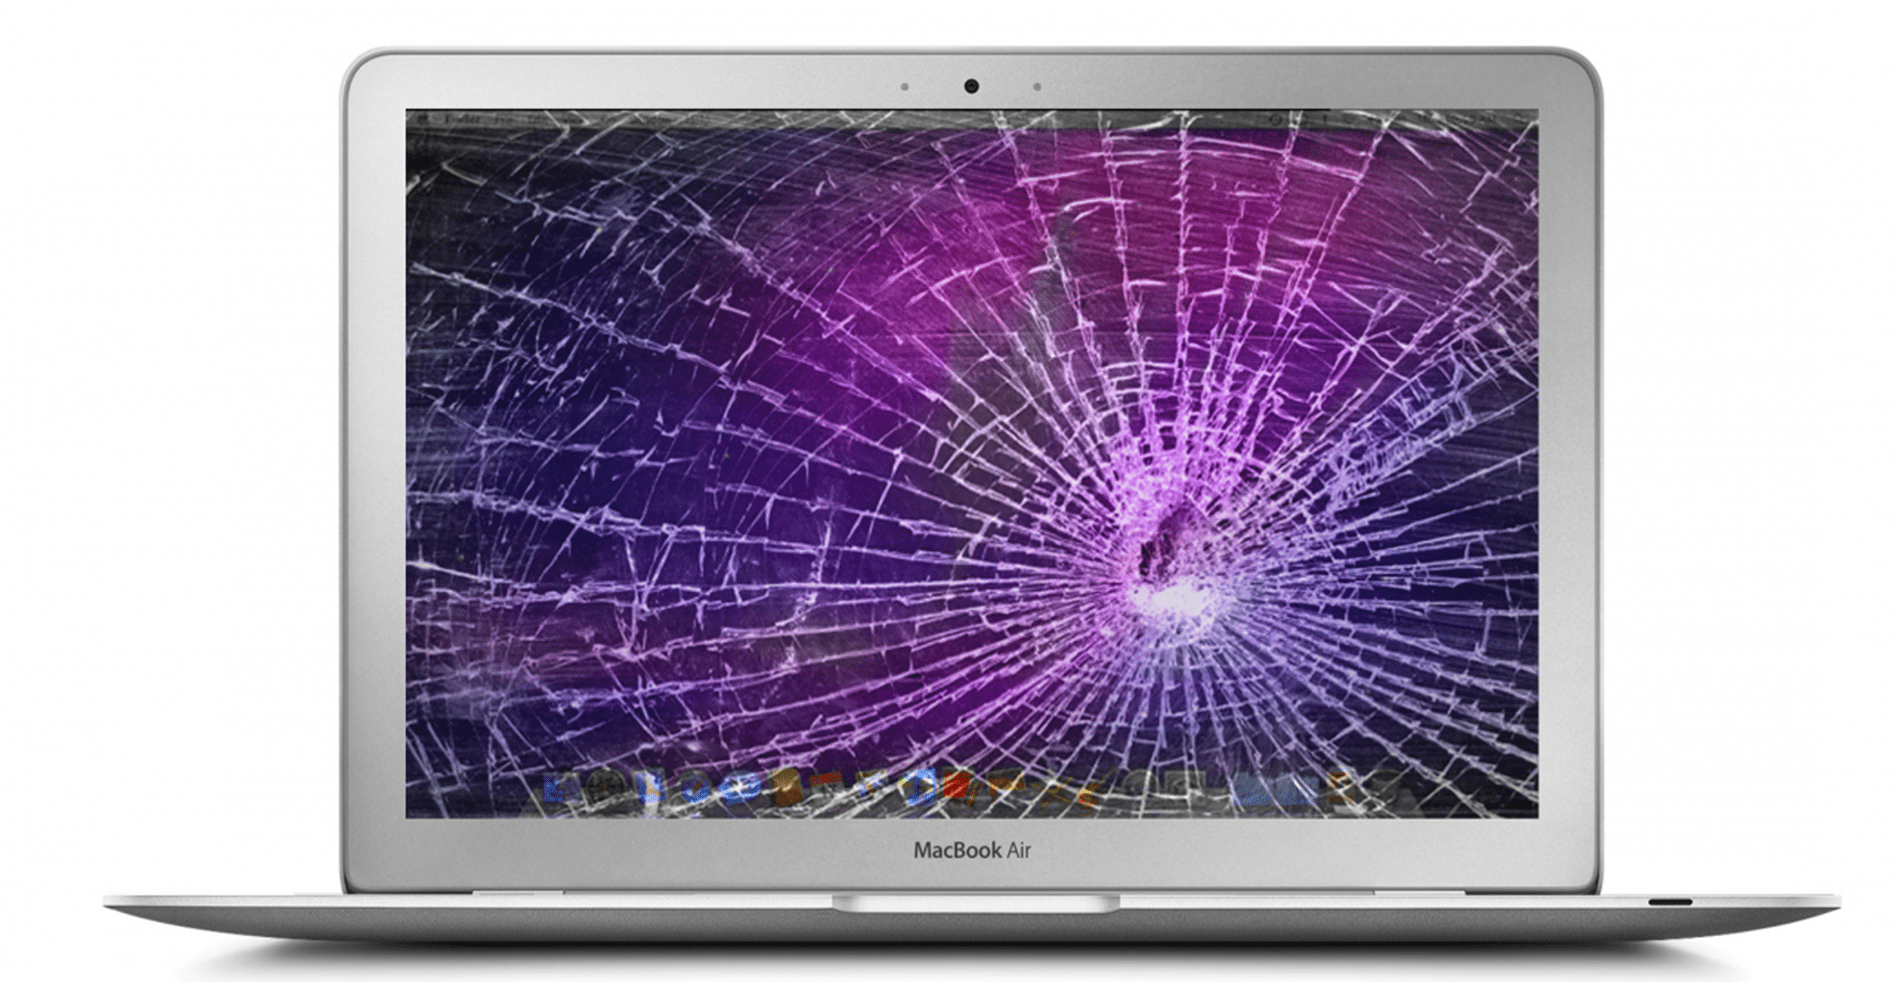 MacBook Screen Repair